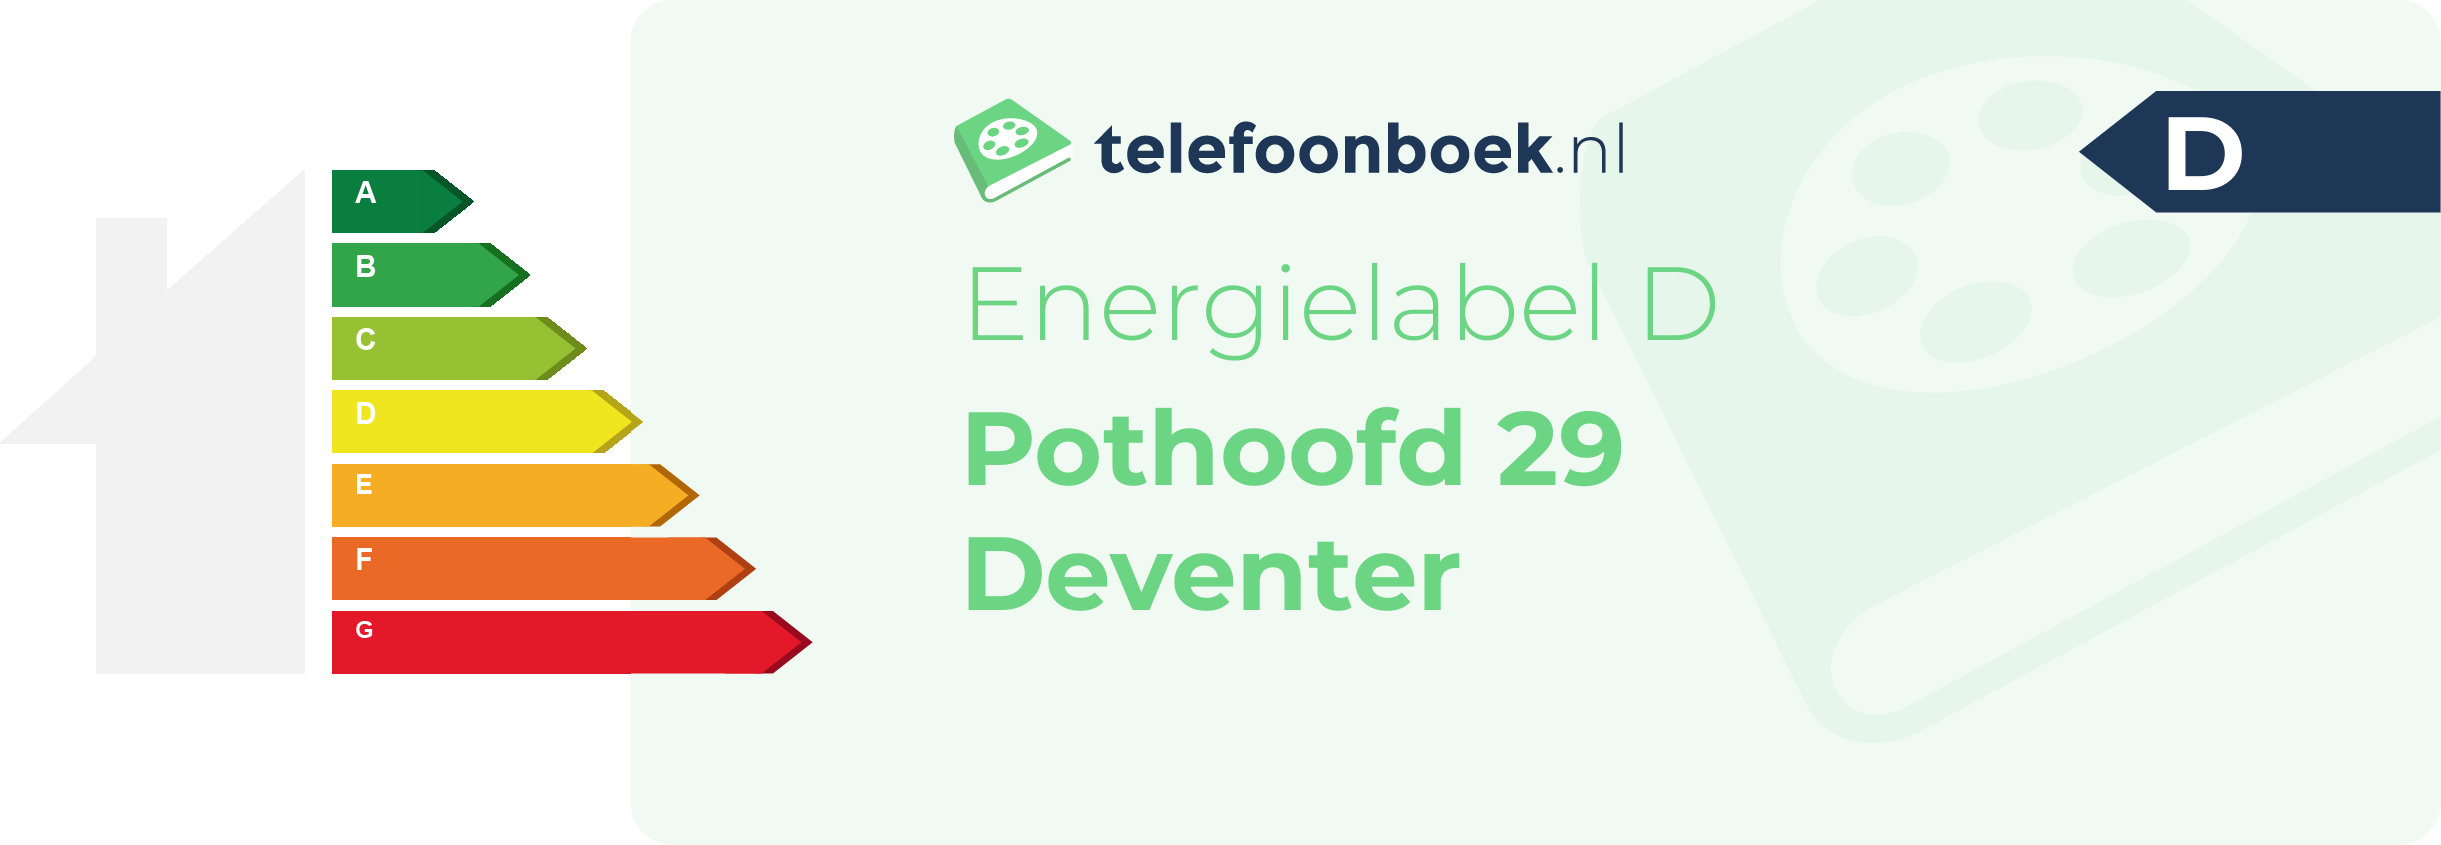 Energielabel Pothoofd 29 Deventer